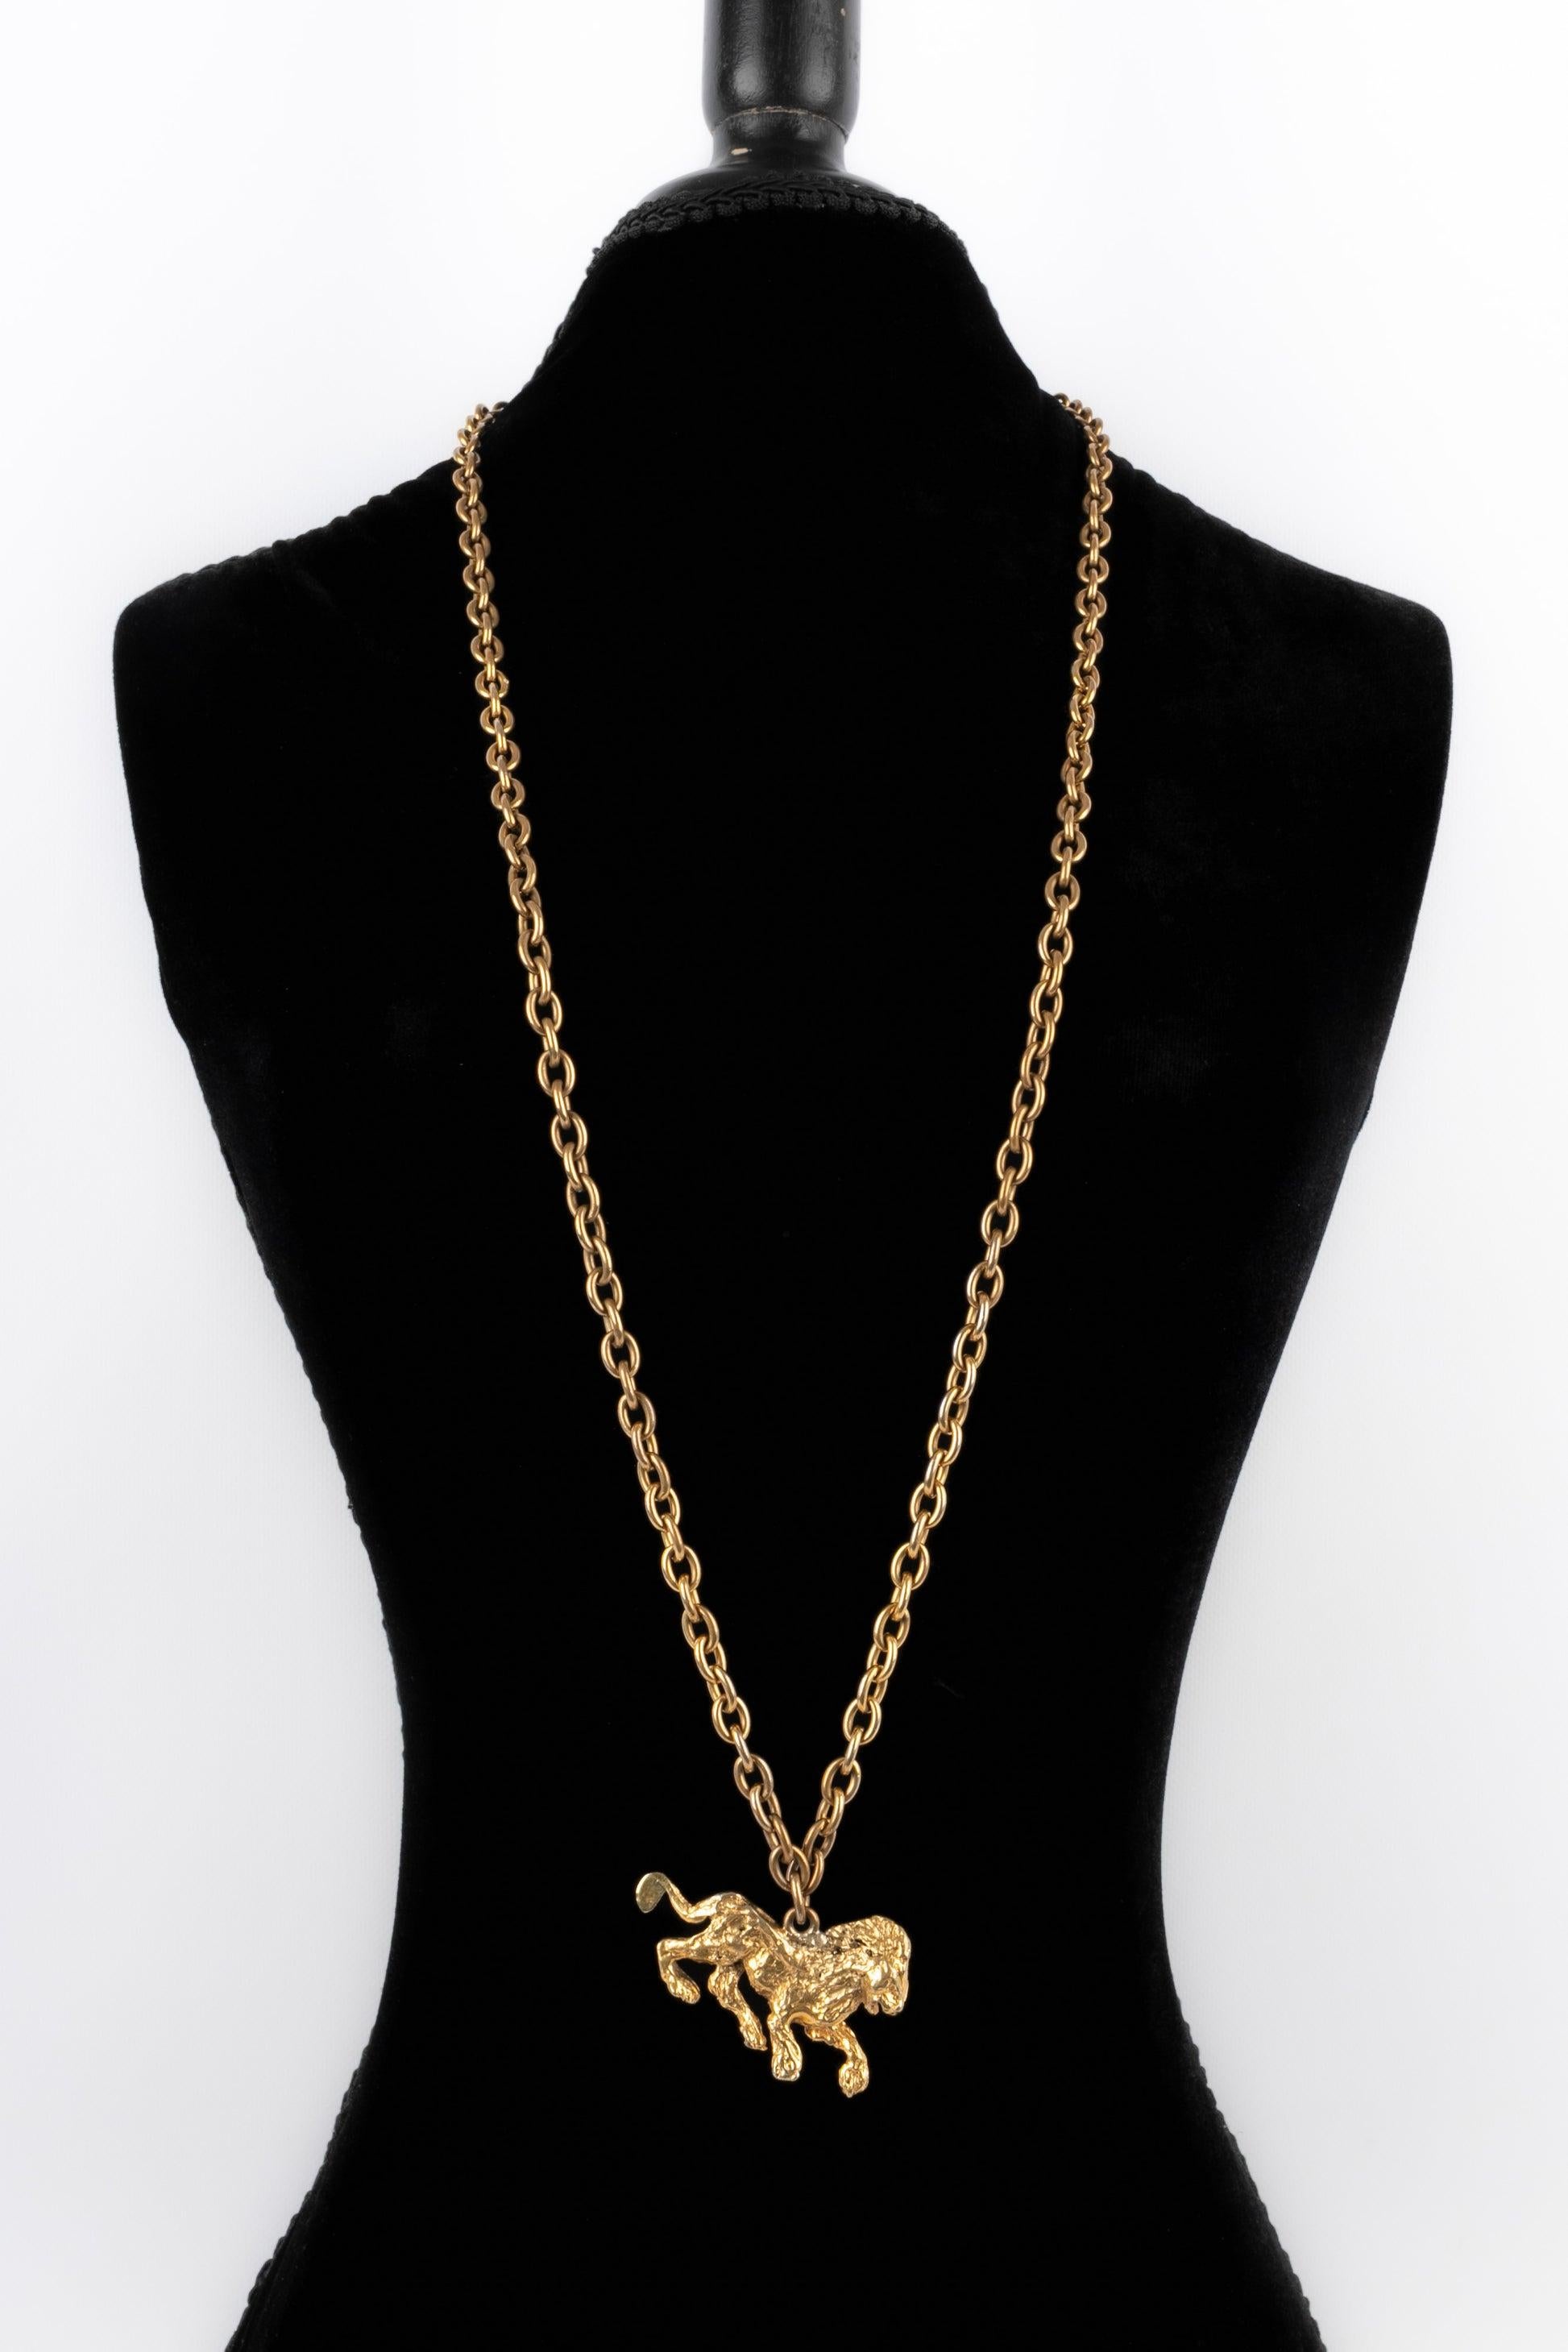 Chanel - (Made in France) Haute-Couture-Halskette aus antikgoldenem Metall mit einem Löwen-Anhänger.
 
 Zusätzliche Informationen: 
 Zustand: Sehr guter Zustand
 Abmessungen: Länge: 100 cm
 
 Sellers Referenz: CB282
